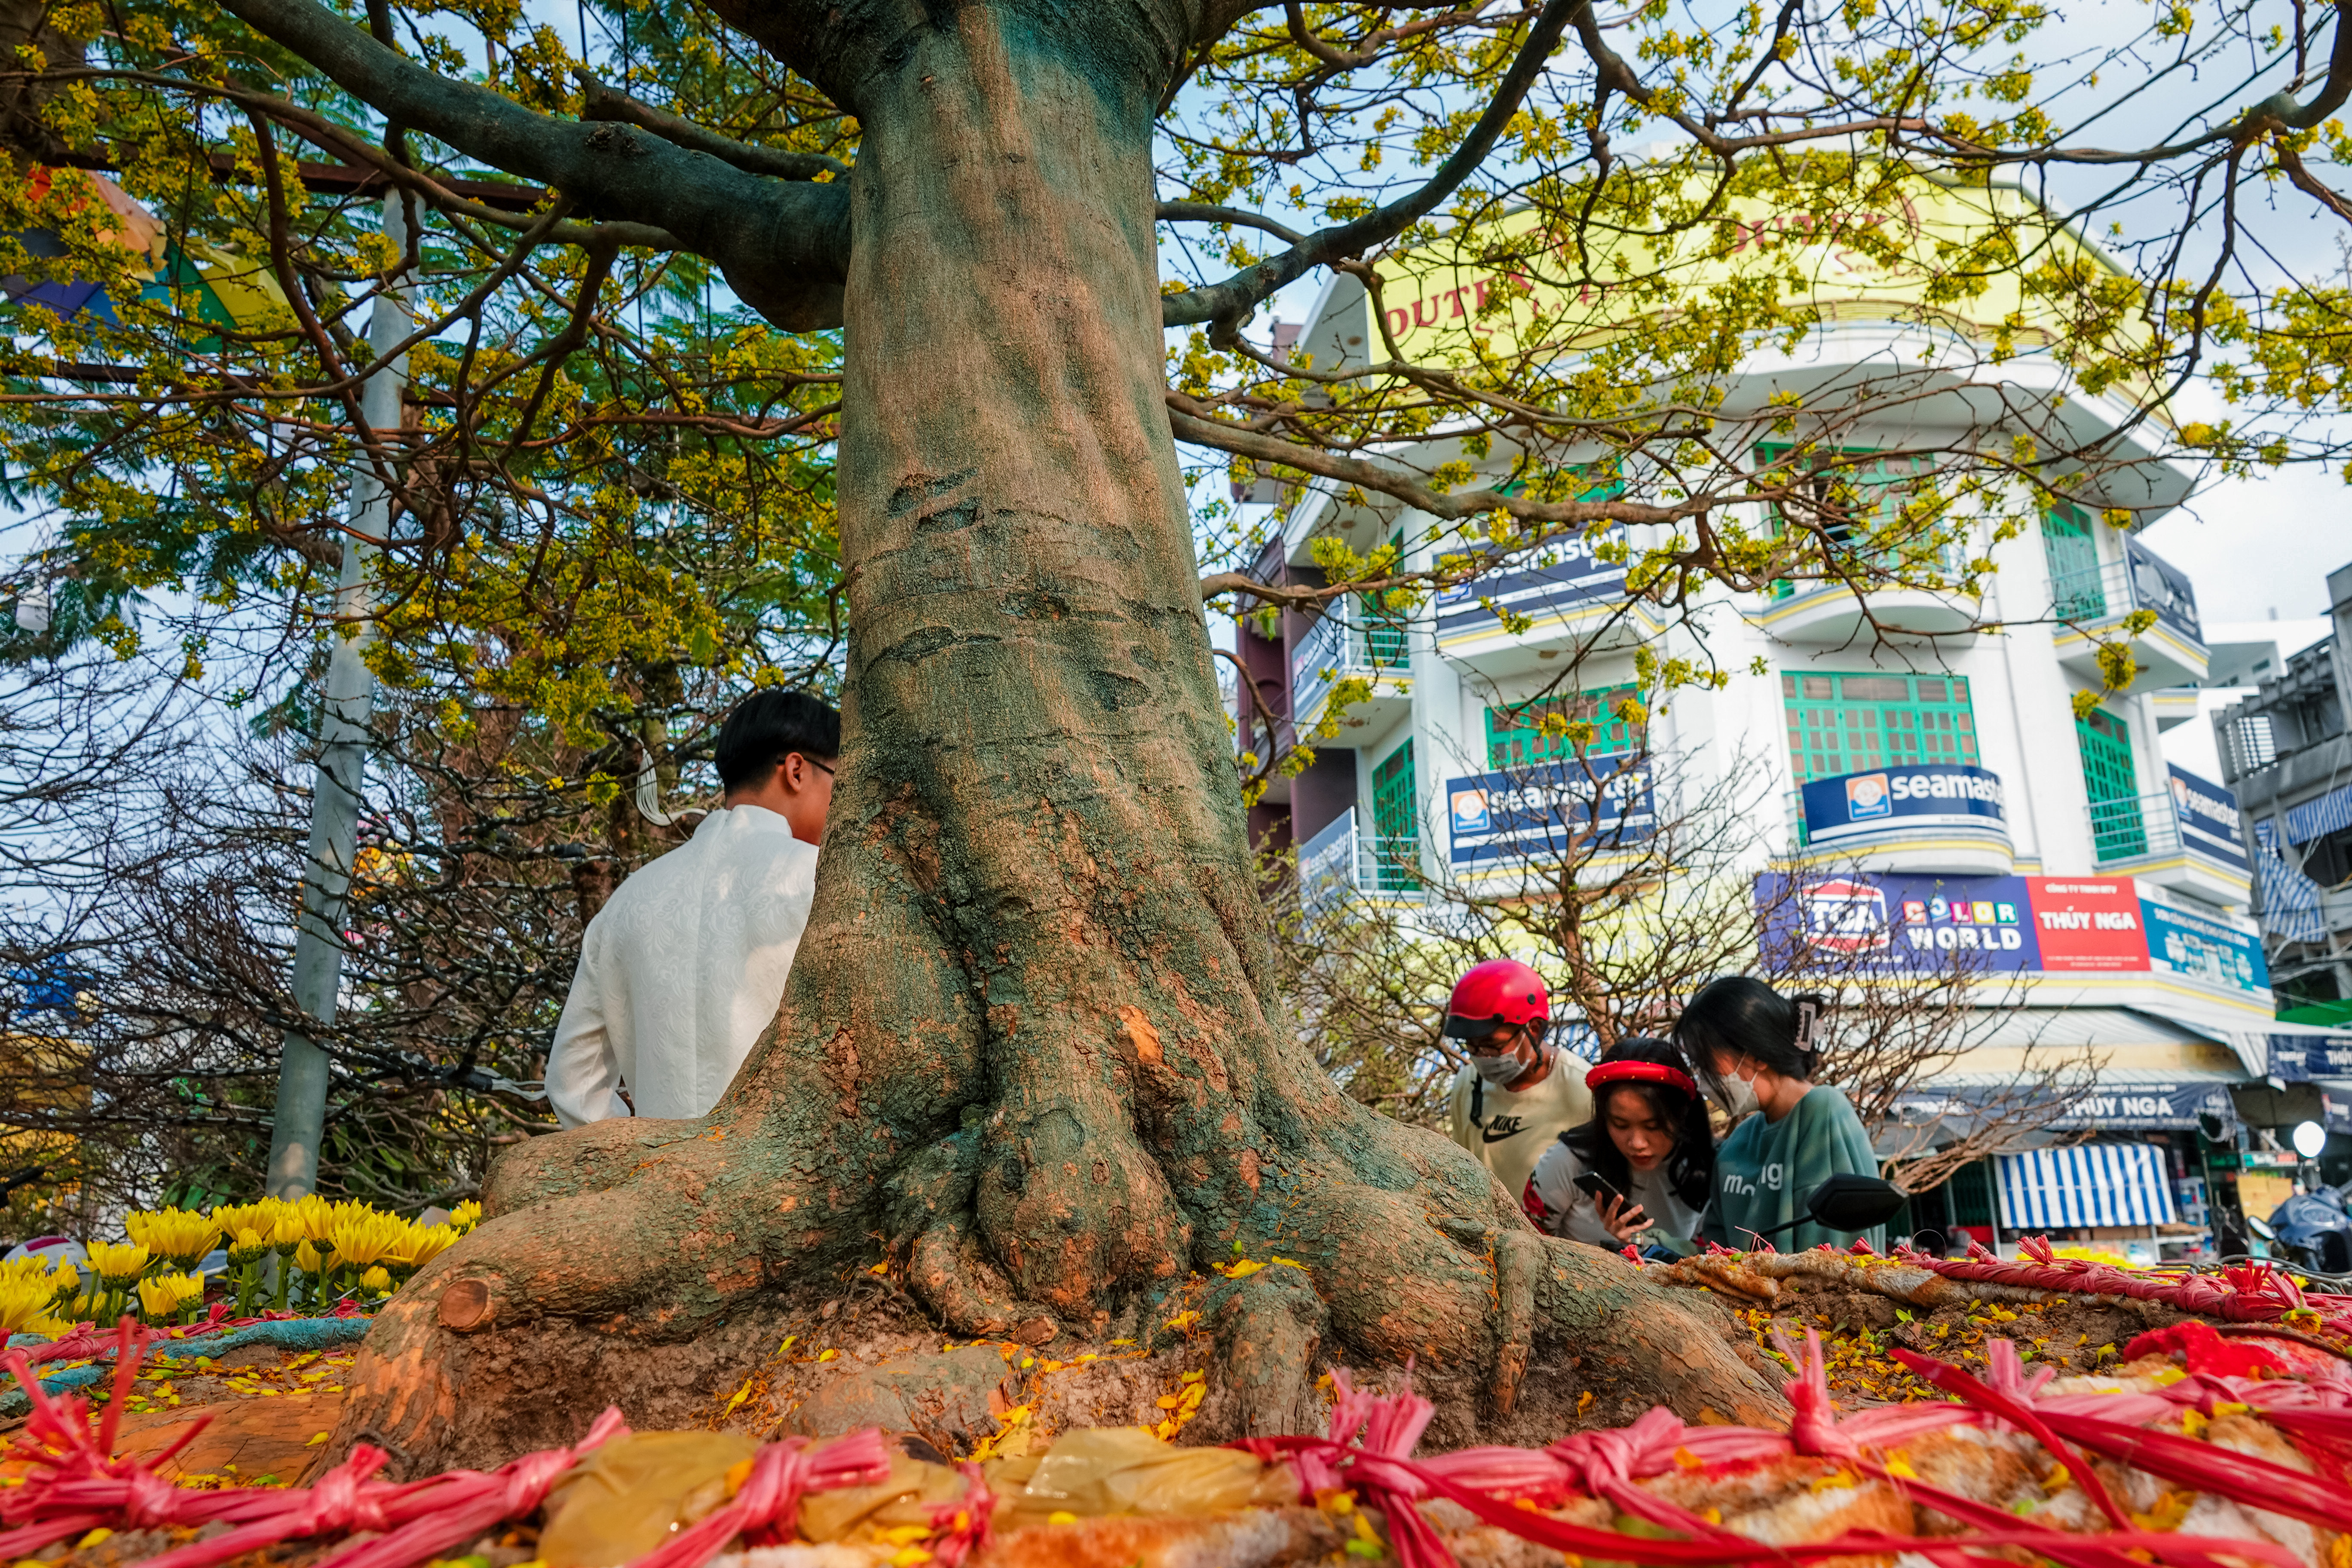 Cây mai được coi là biểu tượng của sự may mắn và phú quý trong văn hoá Việt Nam. Xem hình ảnh để nhìn thấy sự tuyệt đẹp của cây mai và cảm nhận được vẻ đẹp đặc trưng của văn hoá dân tộc.